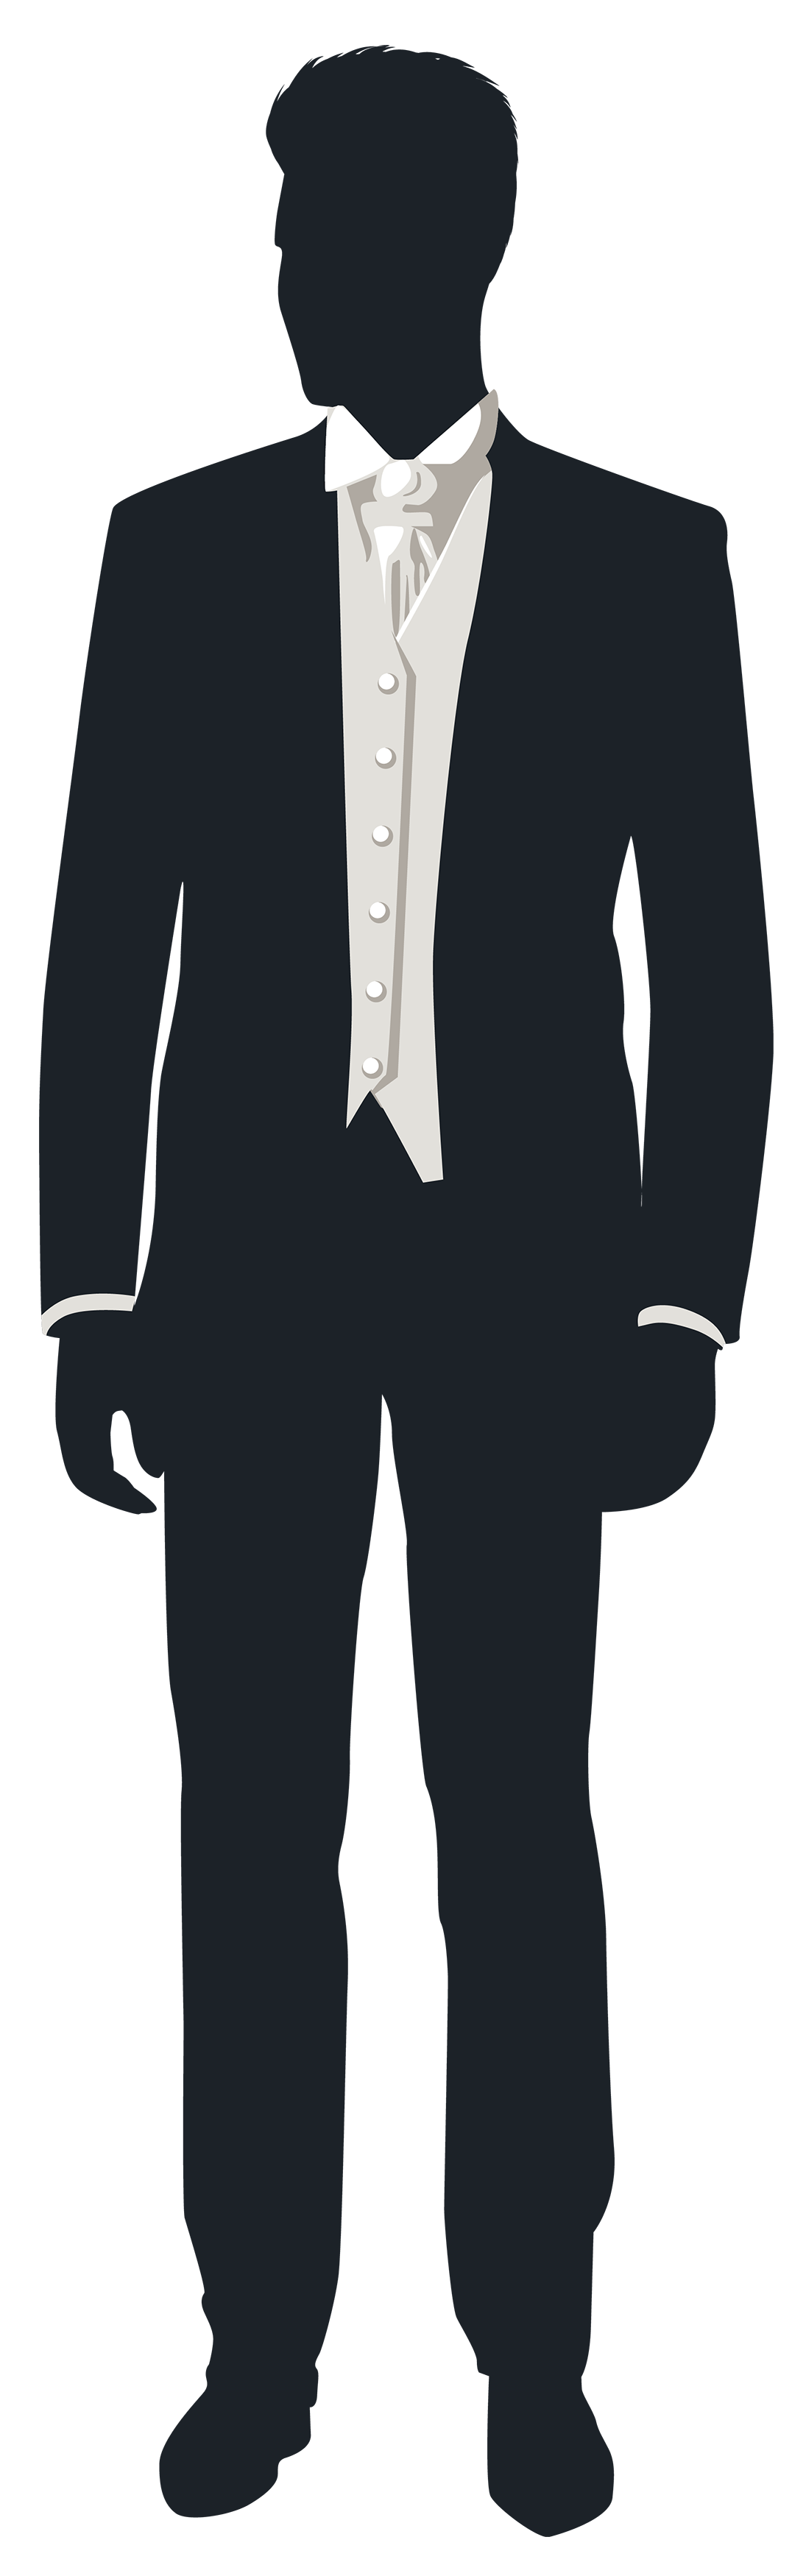 Groom PNG Transparent Image